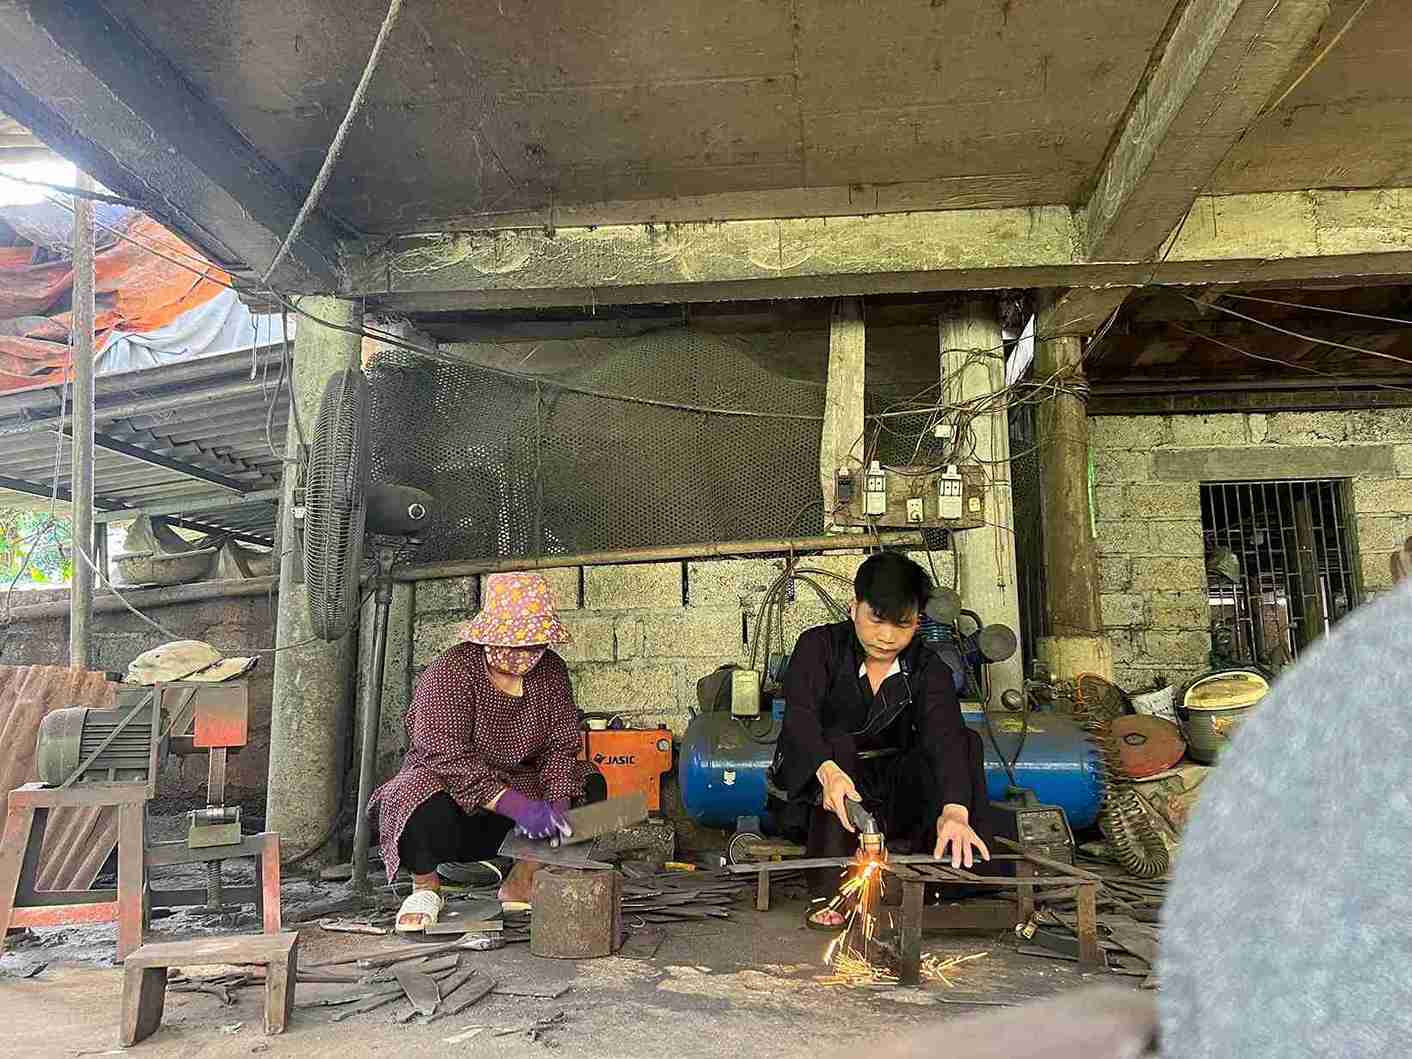 Người dân xóm Pác Rằng, xã Phúc Sen, huyện Quảng Hoà, tỉnh Cao Bằng đã truyền tay nhau kinh nghiệm làm nghề rèn hàng trăm năm nay. Nơi đây mệnh danh là “xưởng rèn thủ công” lớn nhất miền Bắc.